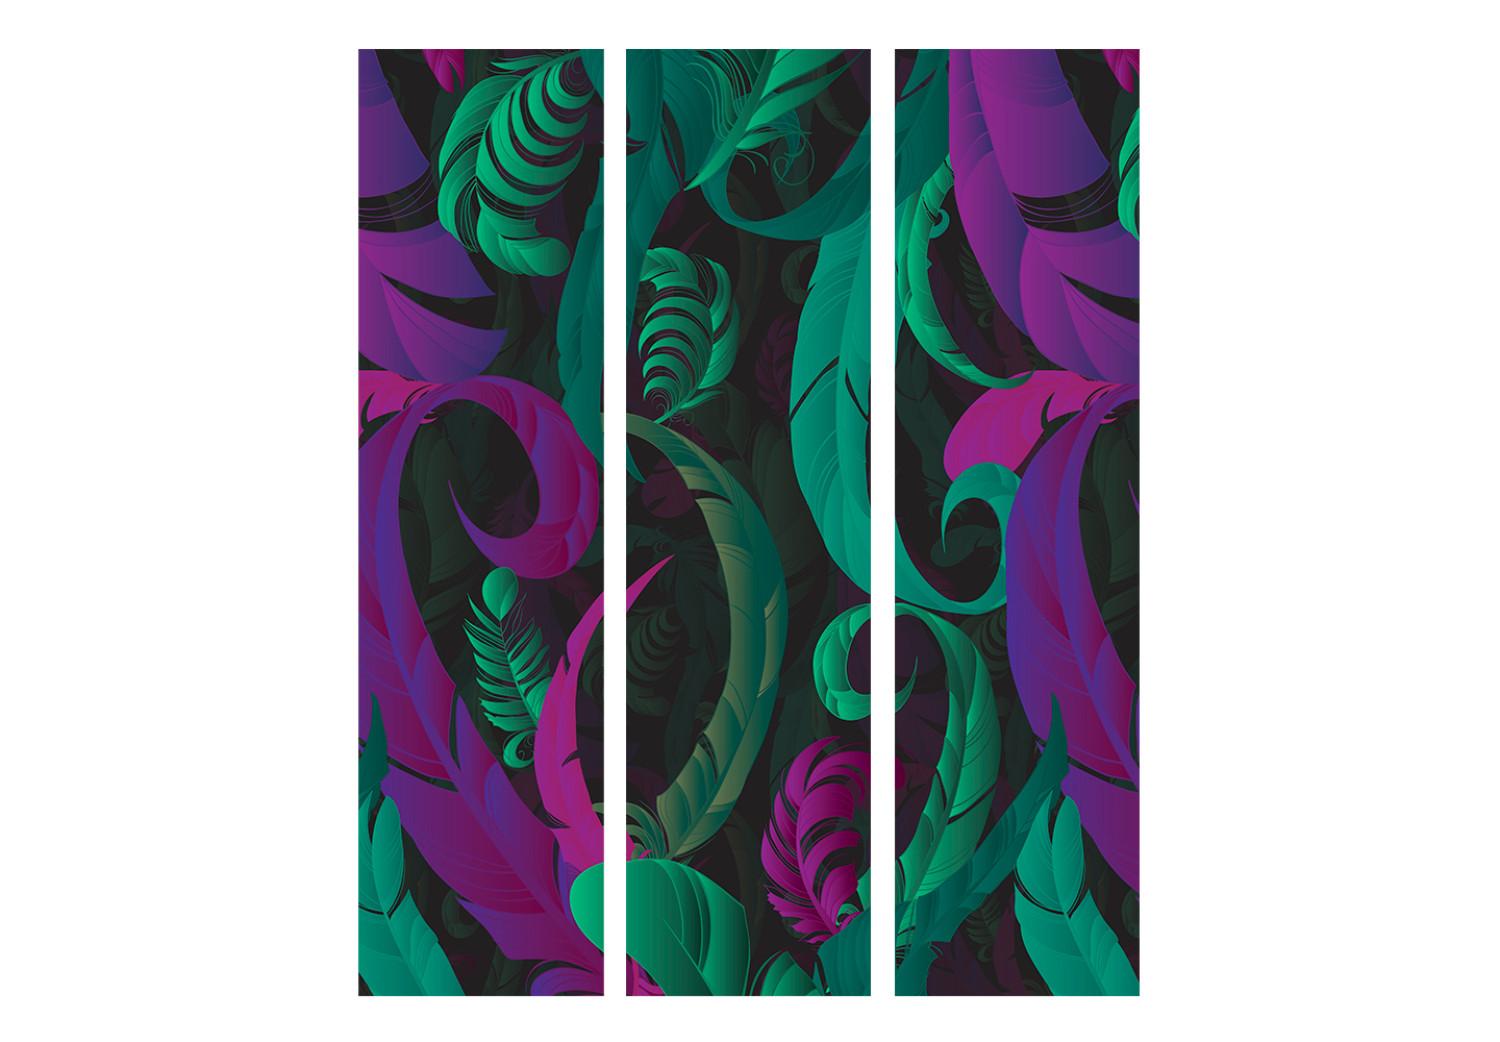 Biombo original Feather Dance (3 partes) - abstracción en tonos verdes y rosados